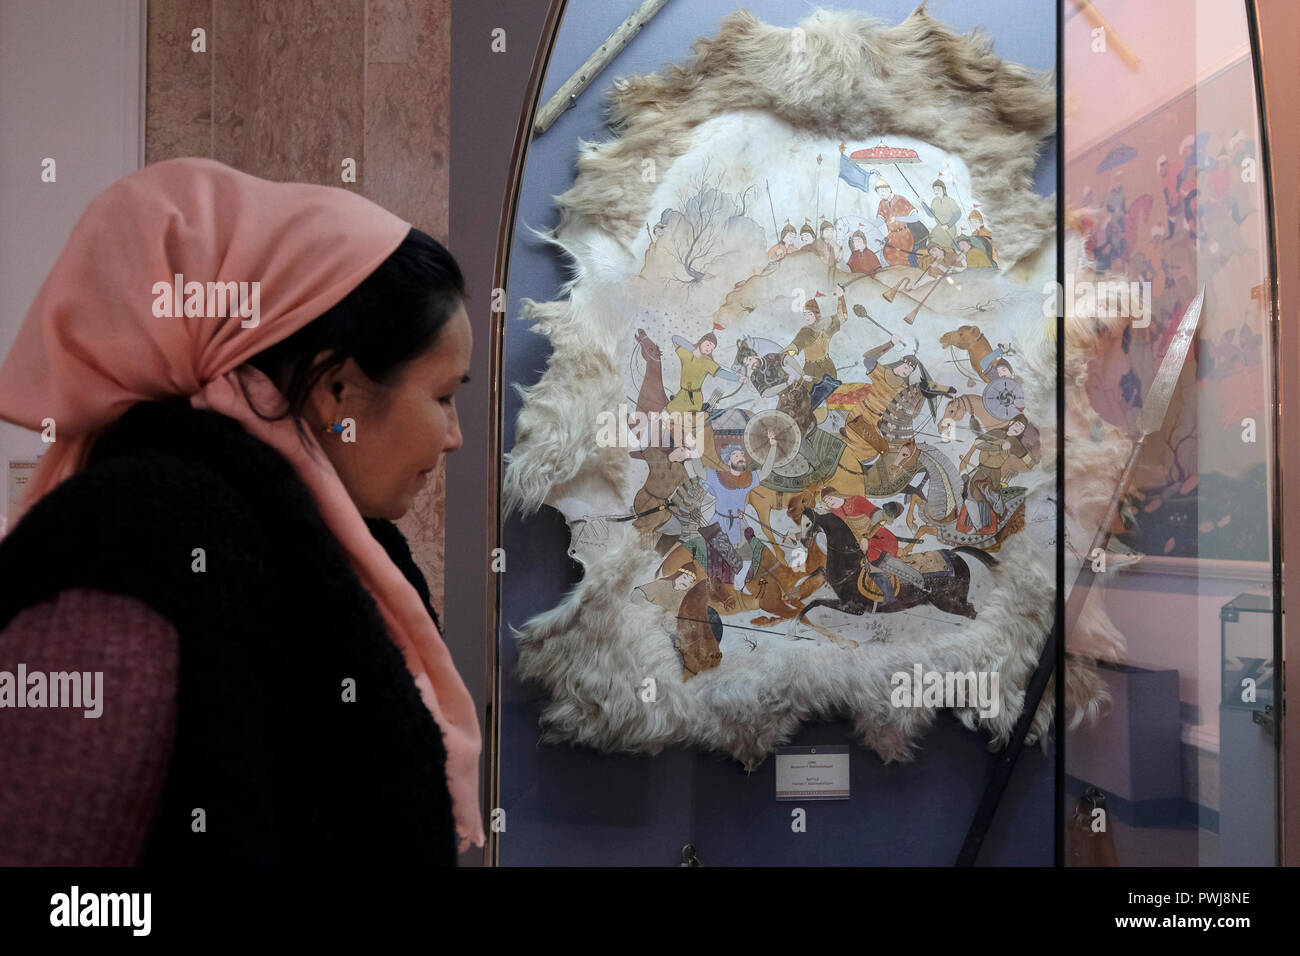 Un visiteur ouzbek voit un tableau sur une peau d'animal montrant la scène de bataille du seigneur de guerre de Mongol Amir Timur (Tamerlane) à l'intérieur du musée d'Amir Timur à Tachkent, capitale de l'Ouzbékistan Banque D'Images